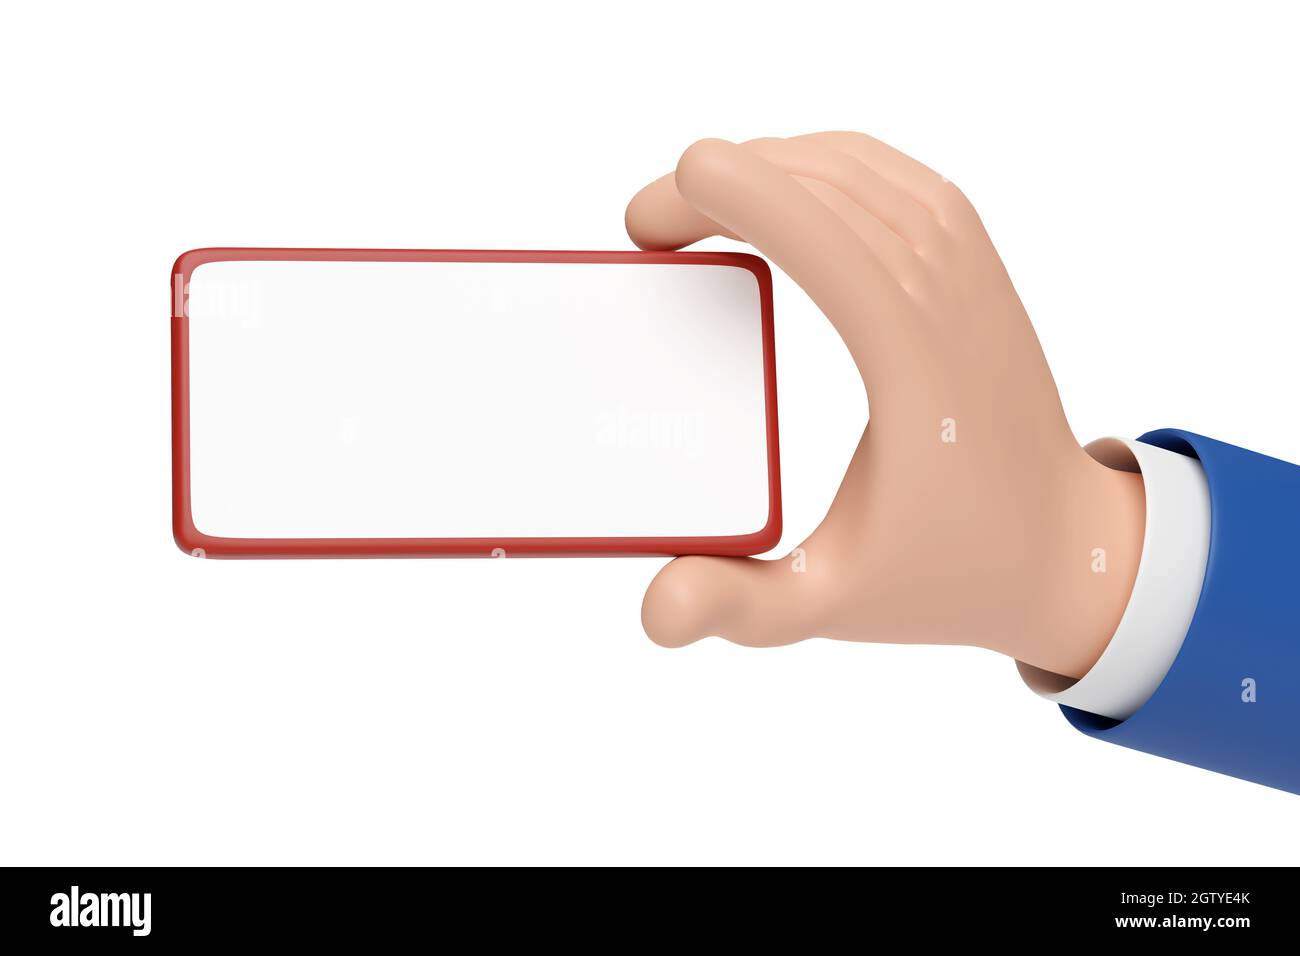 Main de dessin animé tenant le téléphone mobile en position horizontale avec écran vierge isolé sur fond blanc. illustration 3d. Banque D'Images